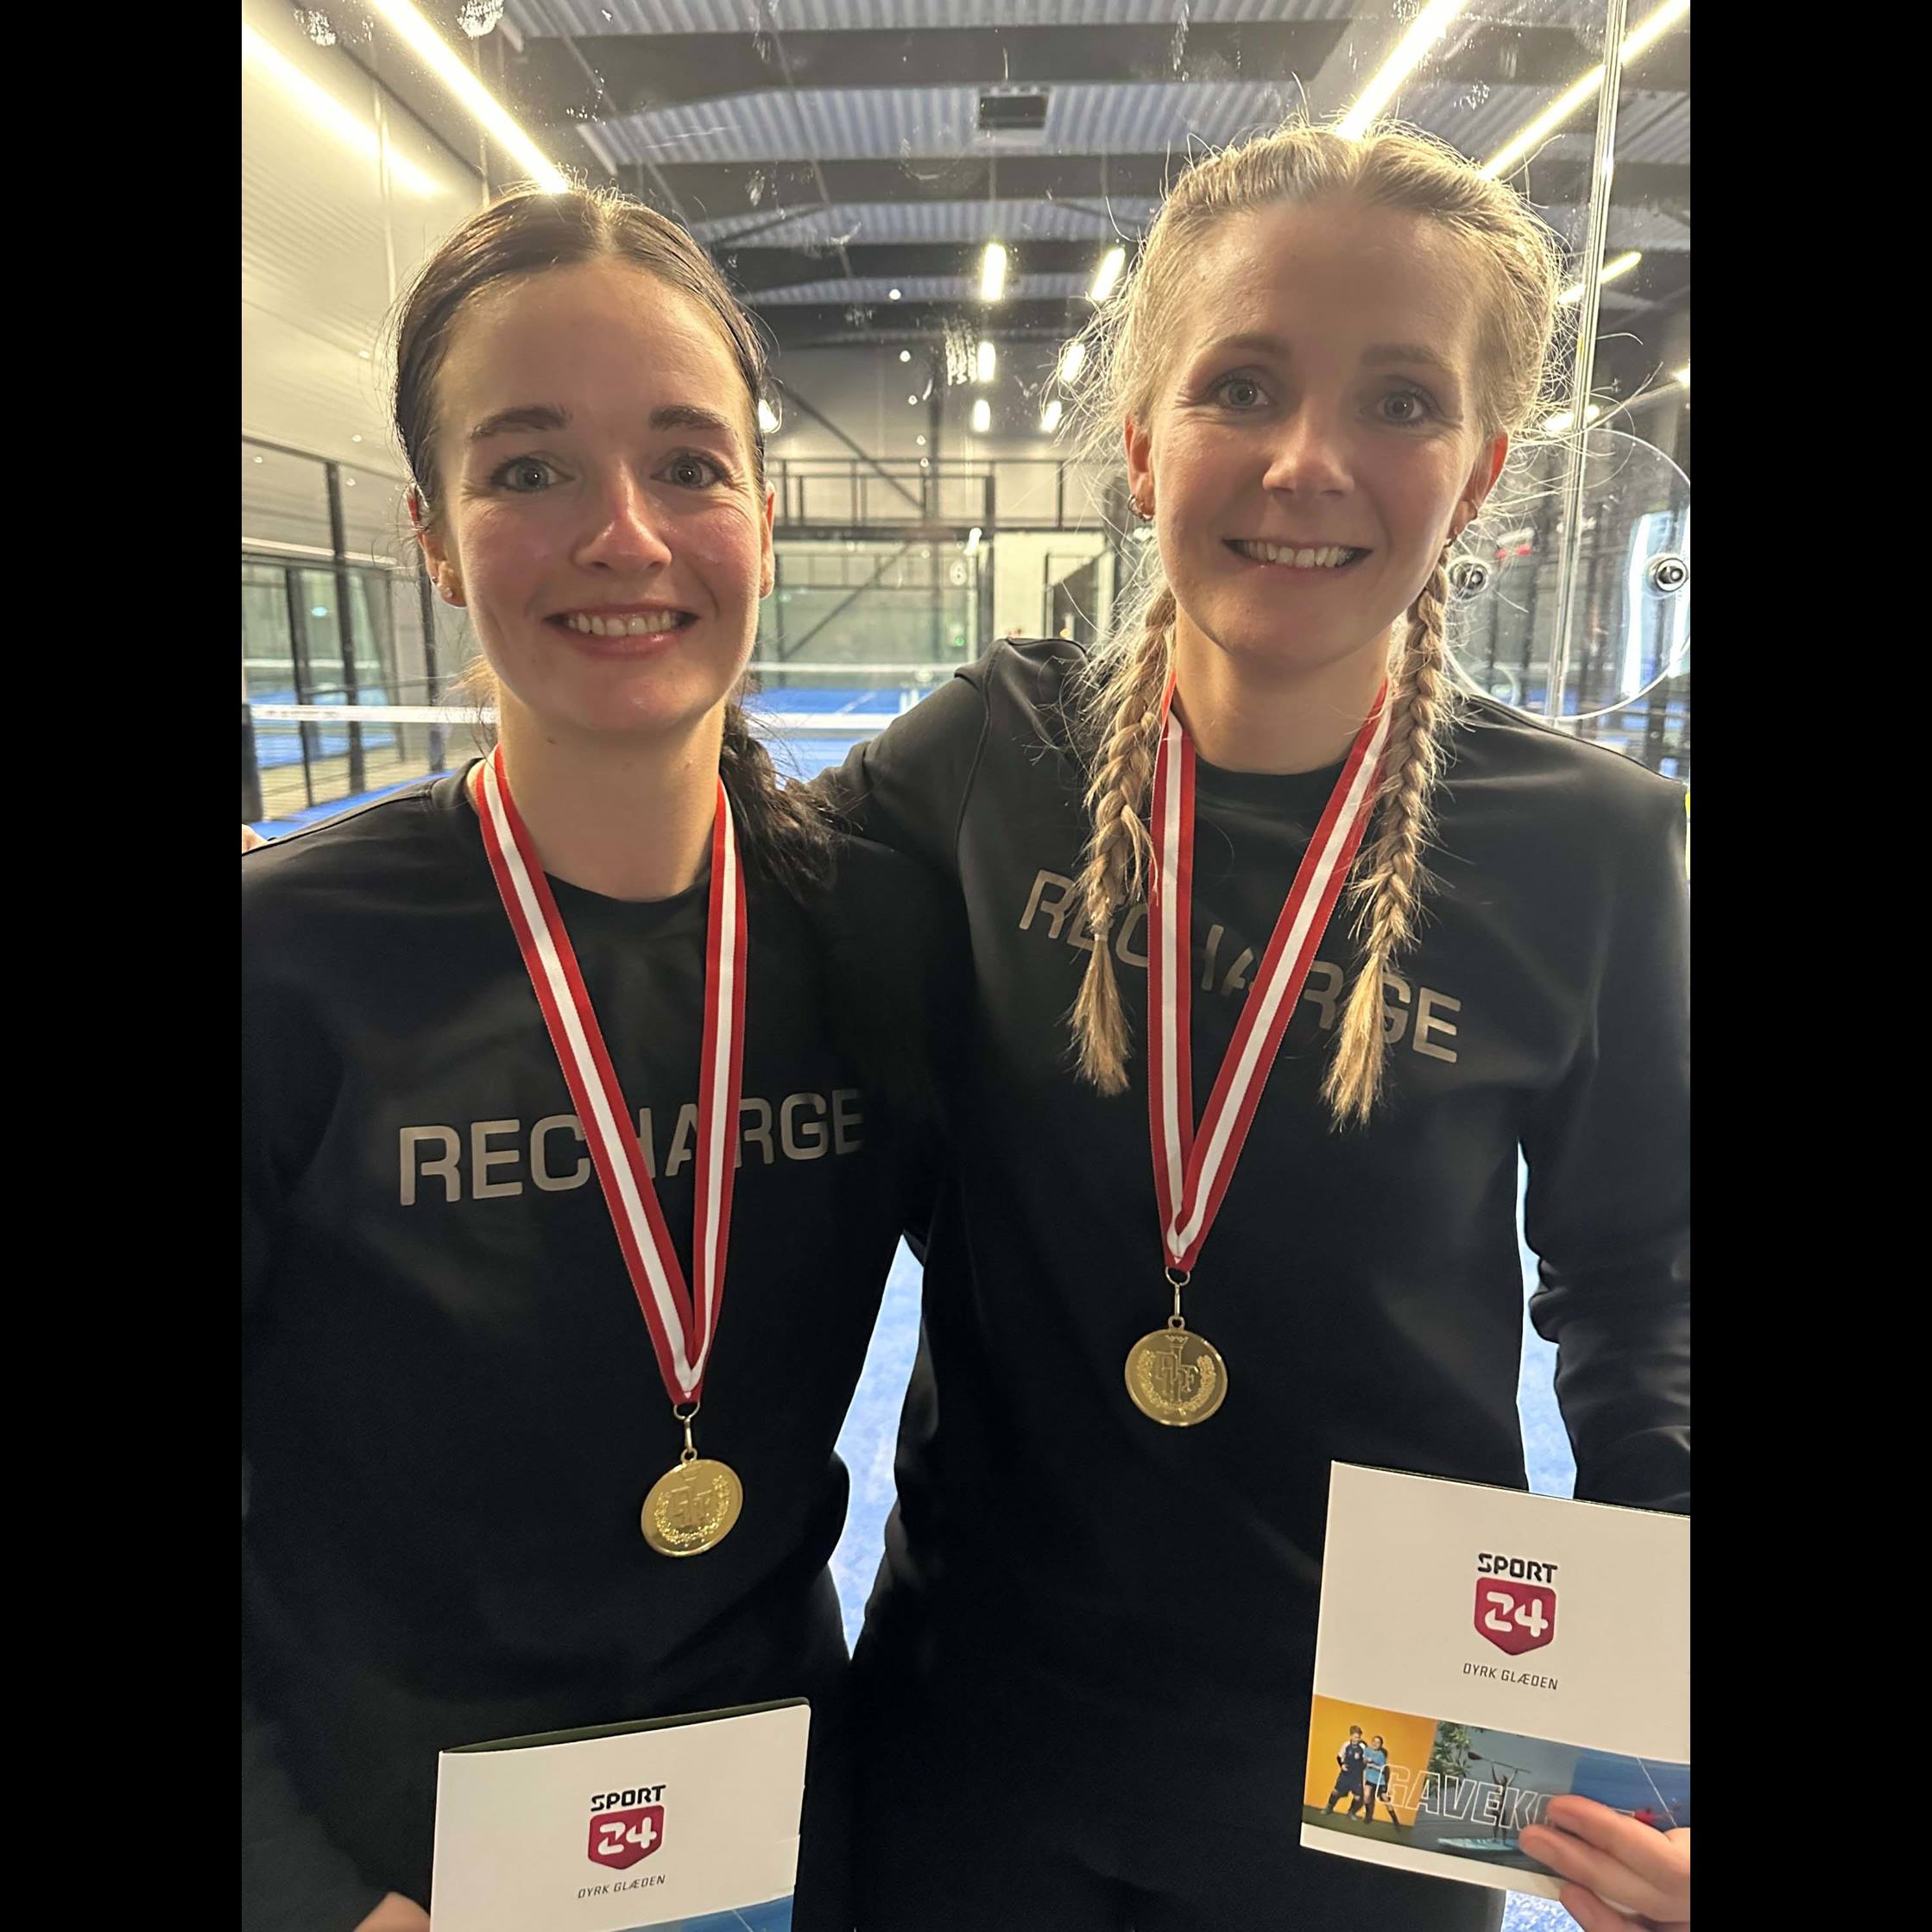 Kine Staunsbjerg og Louise Poulsen Svarrer vandt guld i damerækken ved de danske politimesterskaber i padel